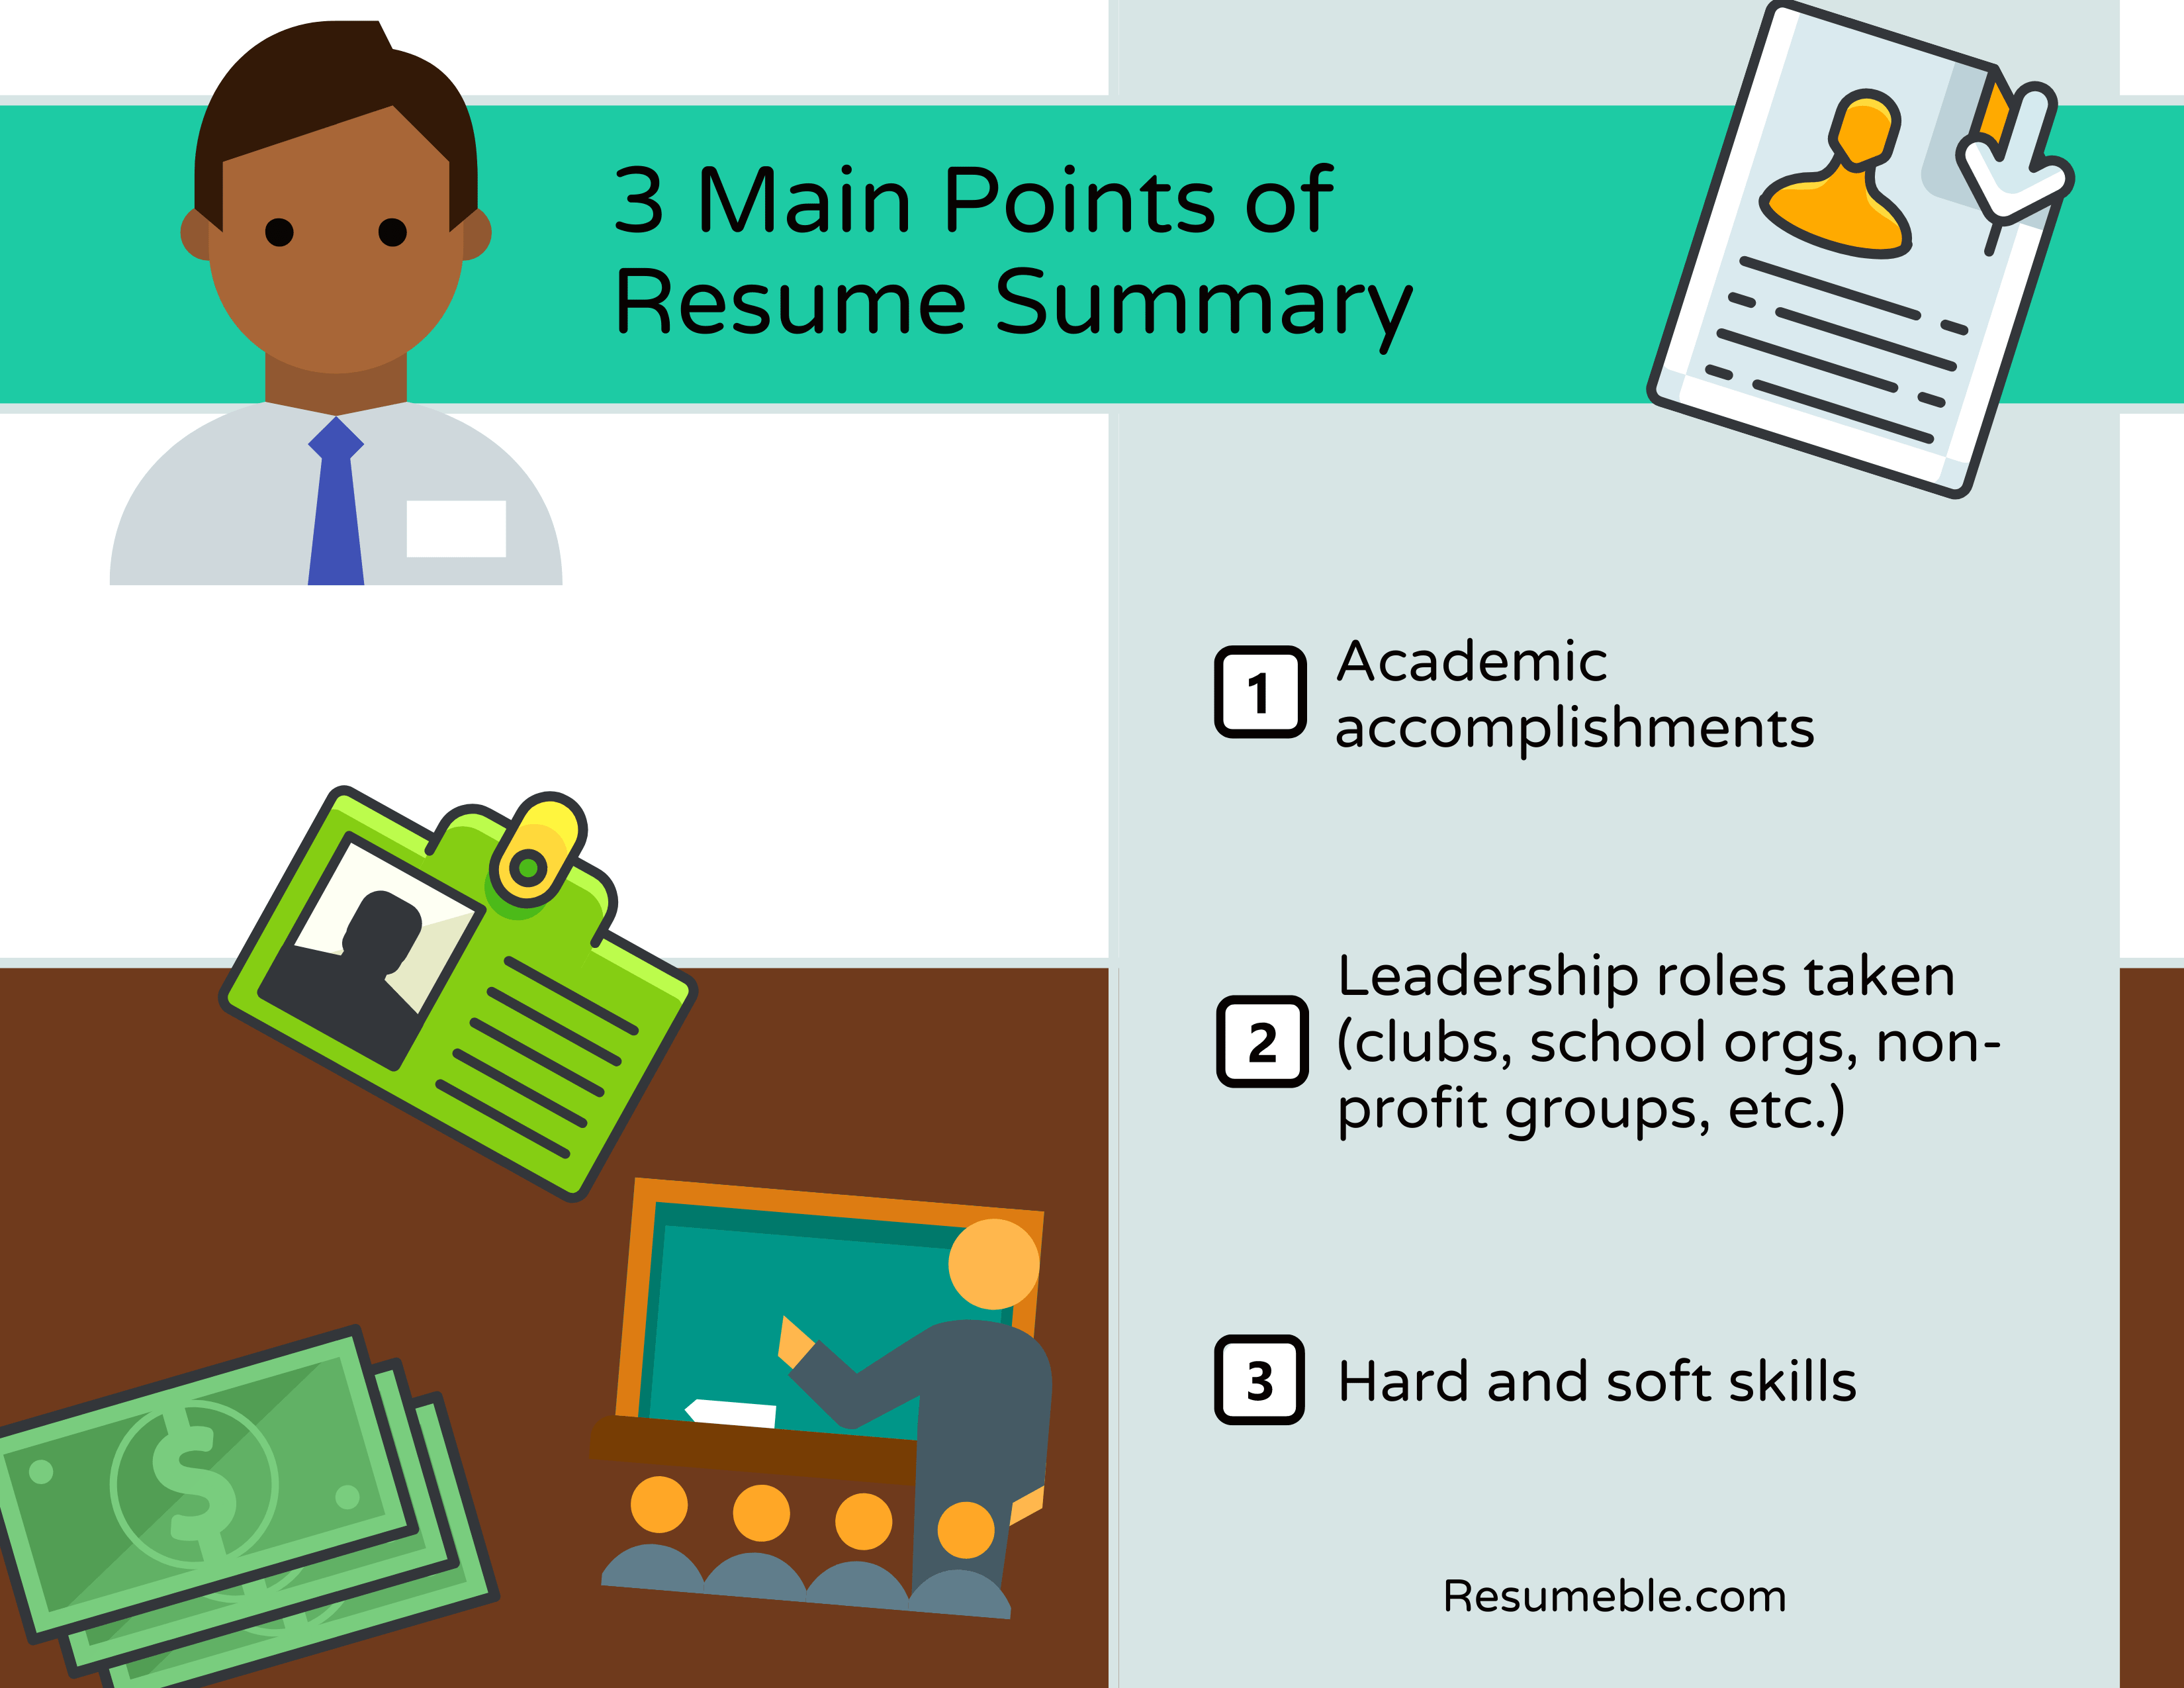 Main Points of Resume Summary